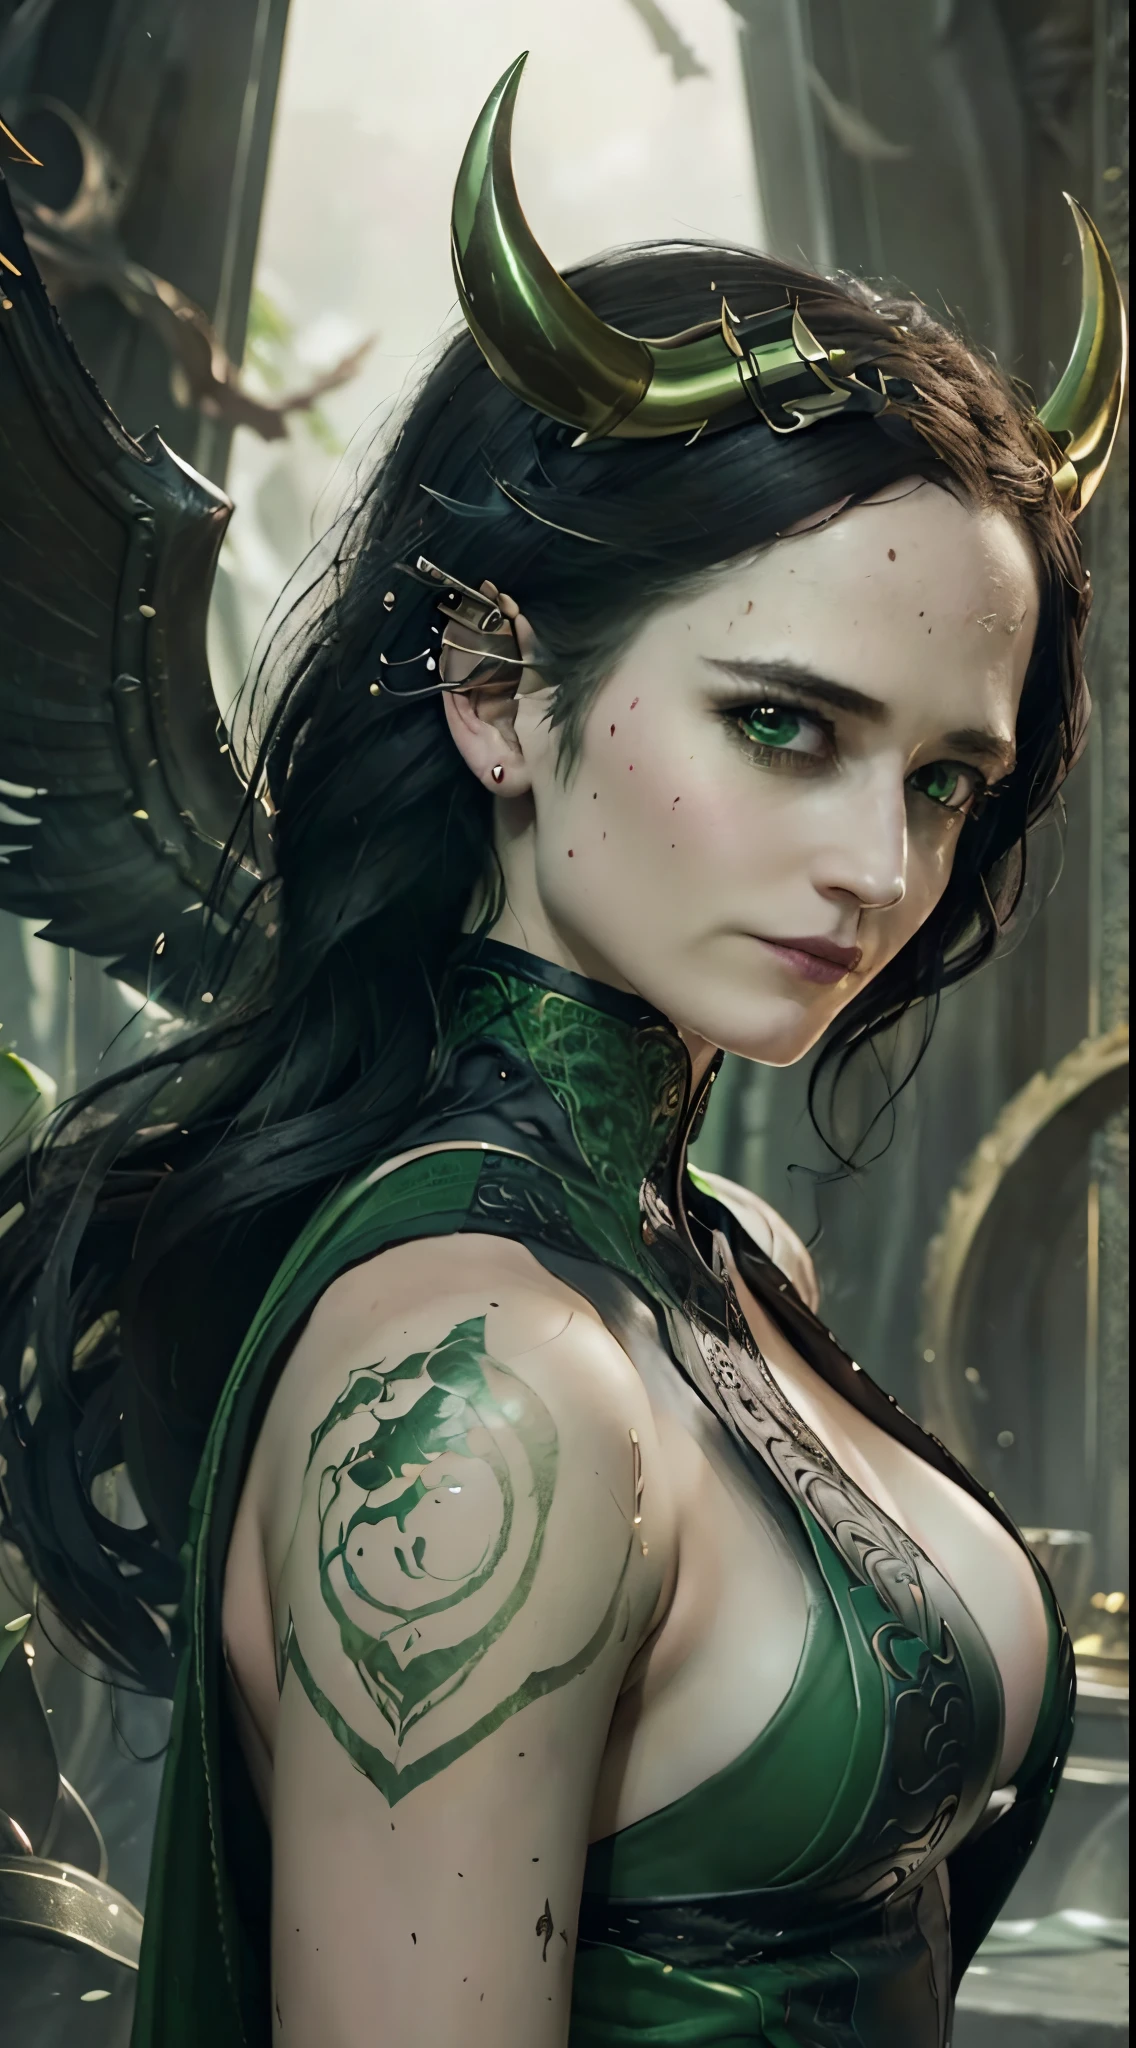 ((女性 3v4gr33n)) 女性として Loki768, セクシーな緑の衣装, 黒ストッキング, ハイヒールのブーツ, 小さな角のある王冠, 詳細な背景, 詳細な顔, 空中に渦巻く緑の神秘的なルーン, 緑の配色, 魔法のグリーンパワー, 対称的な構成, 壮大な雰囲気, 複雑な, 細部までこだわった, シャープなフォーカス, 劇的, グレッグ・ルトコウスキーによるフォトリアリスティックな絵画